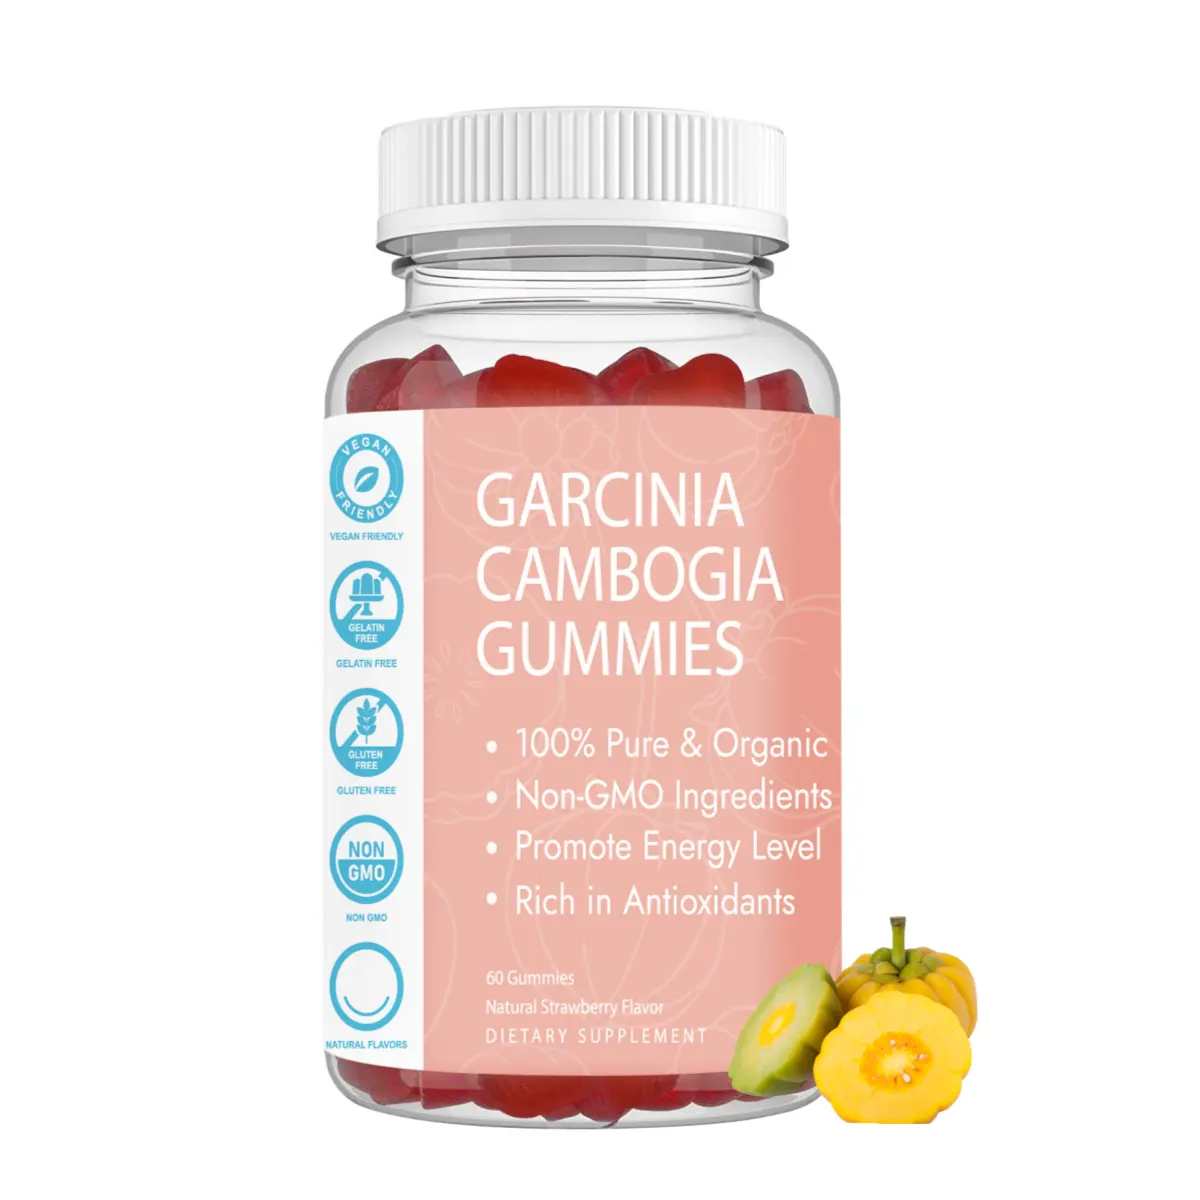 مكمل غذائي عالي الجودة من غارسينيان كامبوديا يساعد على فقدان الوزن ويحرق الدهون